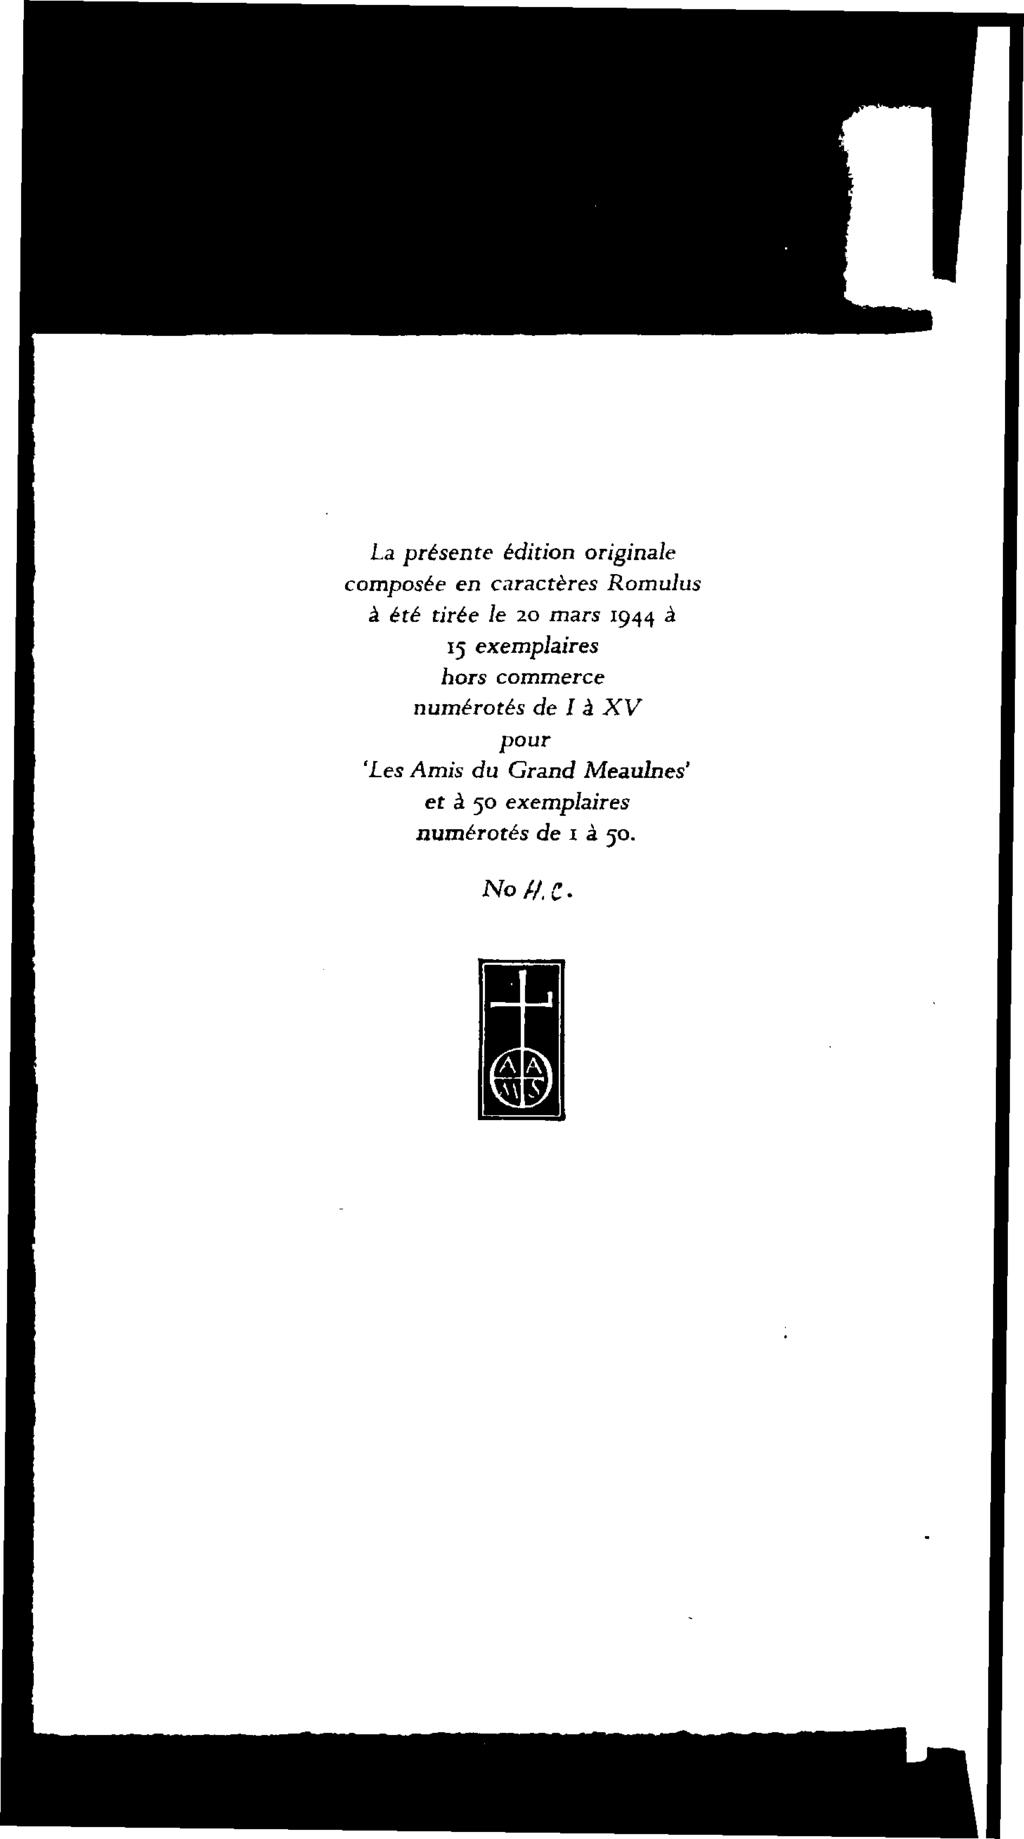 La présente edition originale composée en caractères Romulus a été tirée le 20 mars 1944 a 15 exemplaires